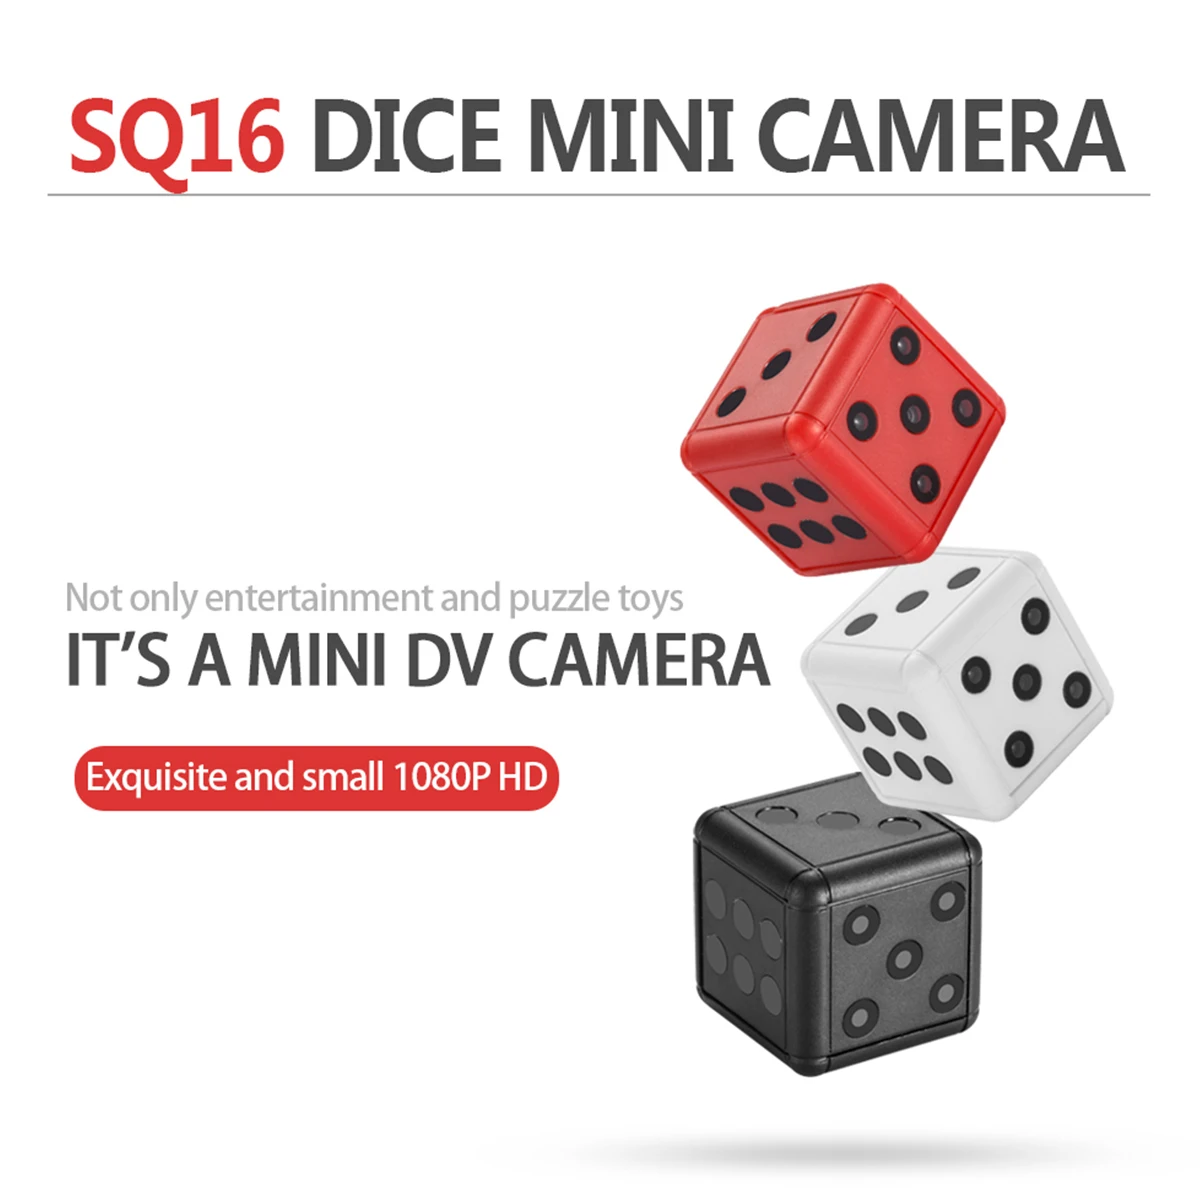 1080 P HD мини-камера для занятий спортом регистраторы SQ16 игральные кости камера видео Запись Поддержка TF карты камеры скрытого